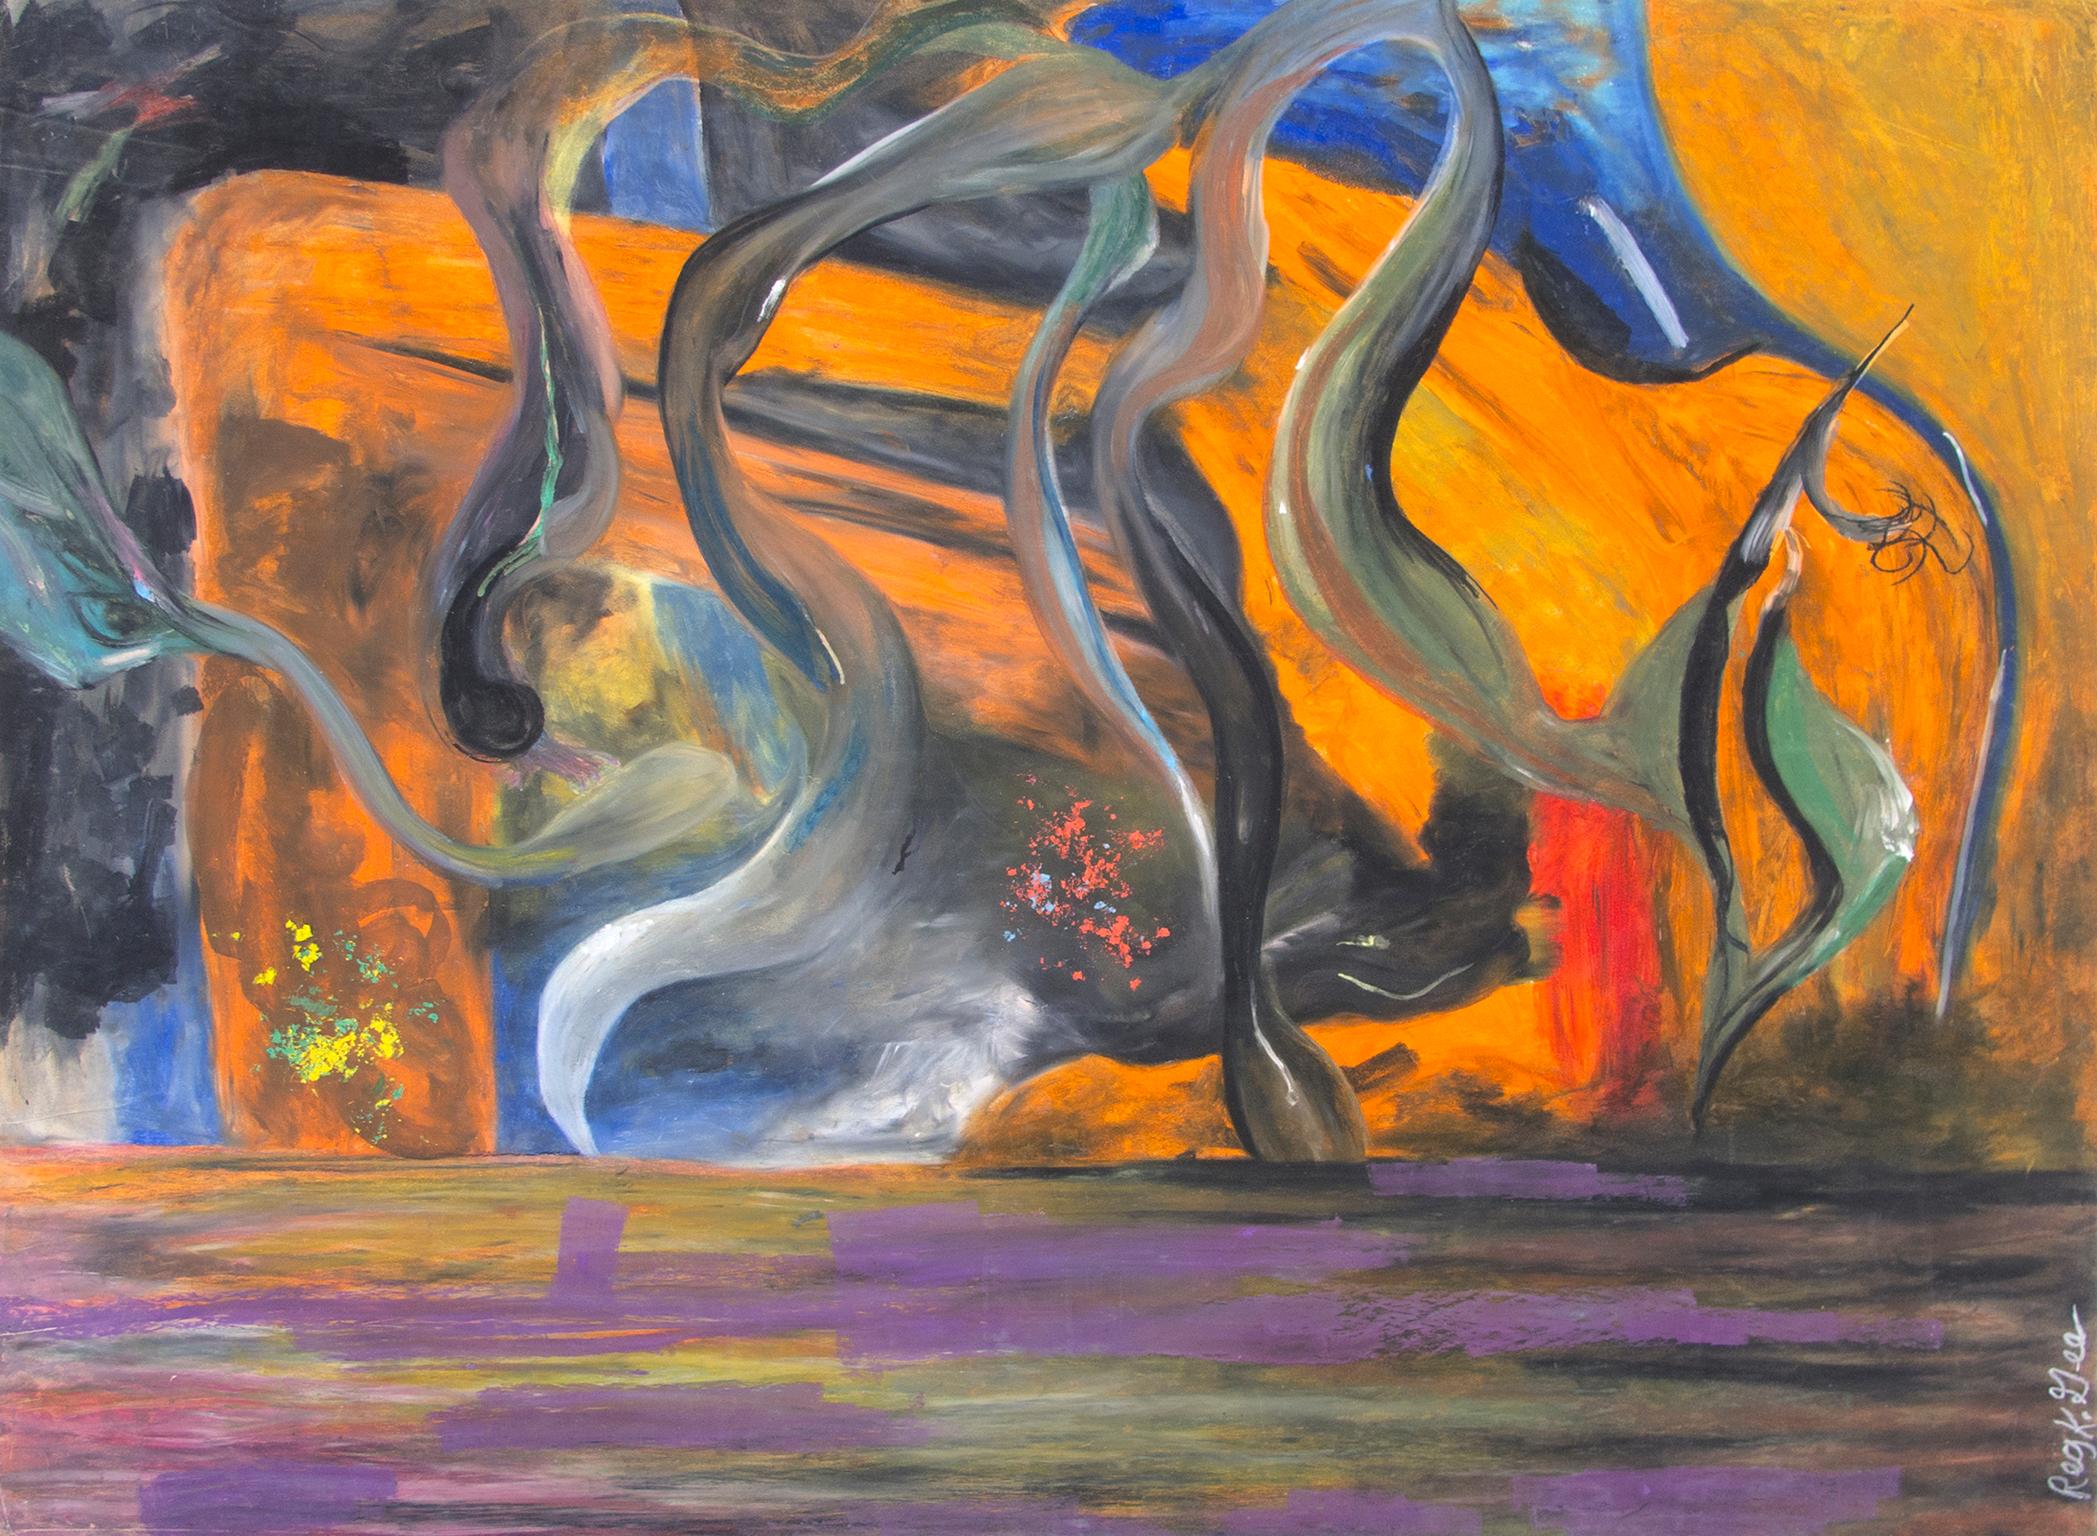 "Not Intended For Office Viewing Series, Section F" est un dessin original au pastel gras sur carton d'illustration de Reginald K. Gee. L'artiste a signé l'œuvre en bas à droite. Cette pièce présente un paysage abstrait en orange, bleu et violet.